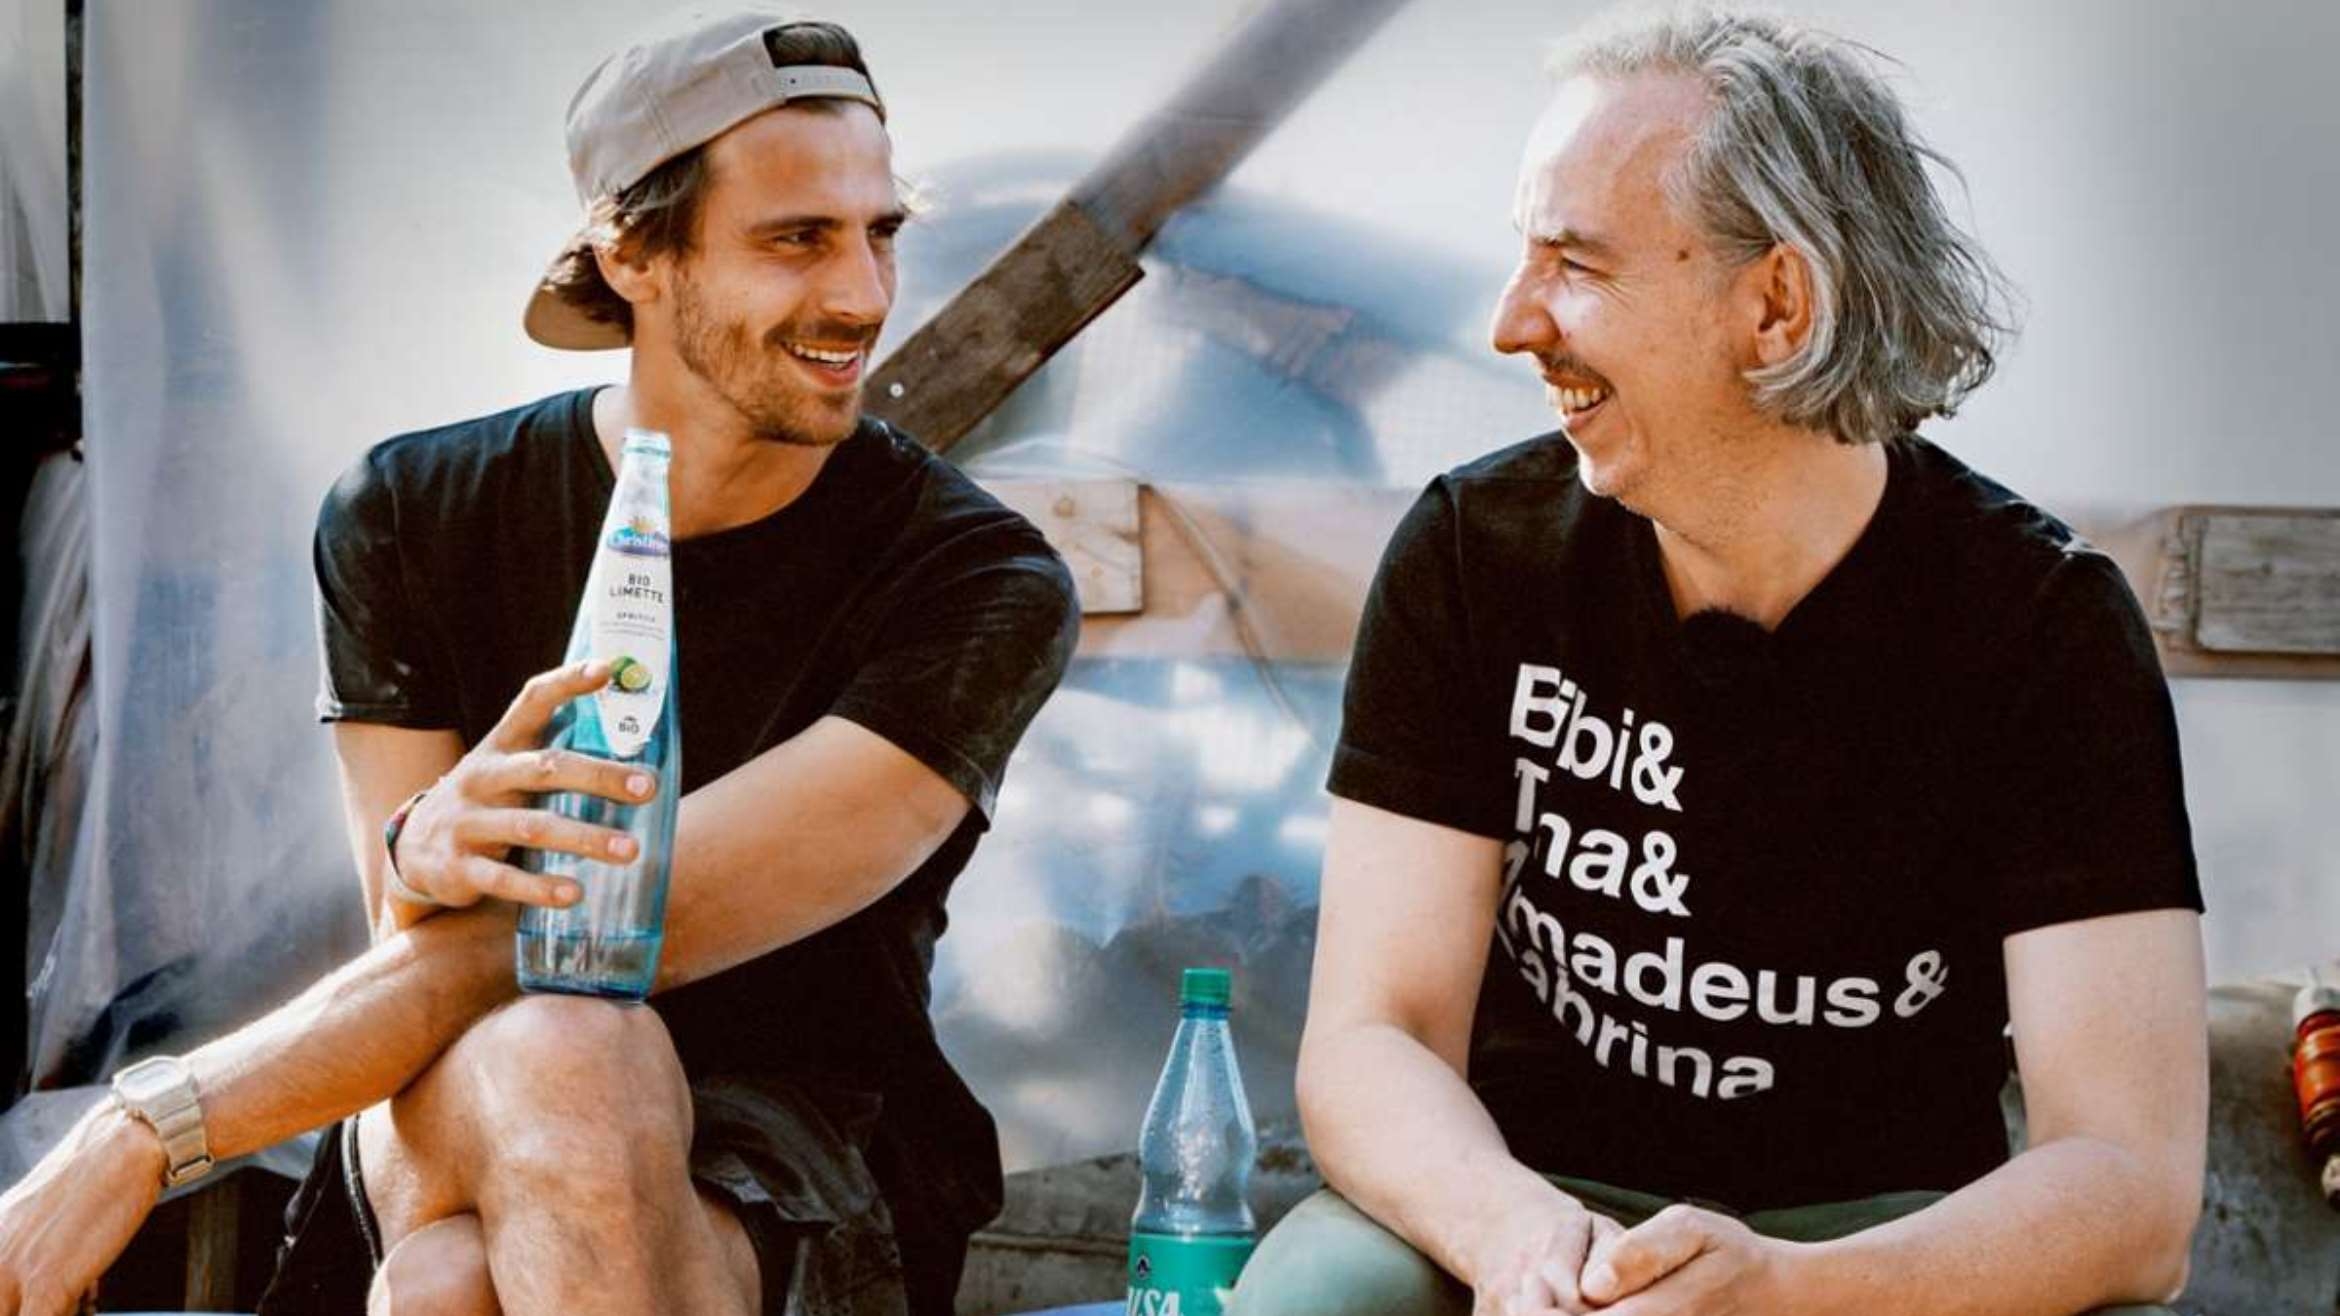 Fynn Kliemann und Olli Schulz in der Netflix-Reihe "Das Hausboot" - 